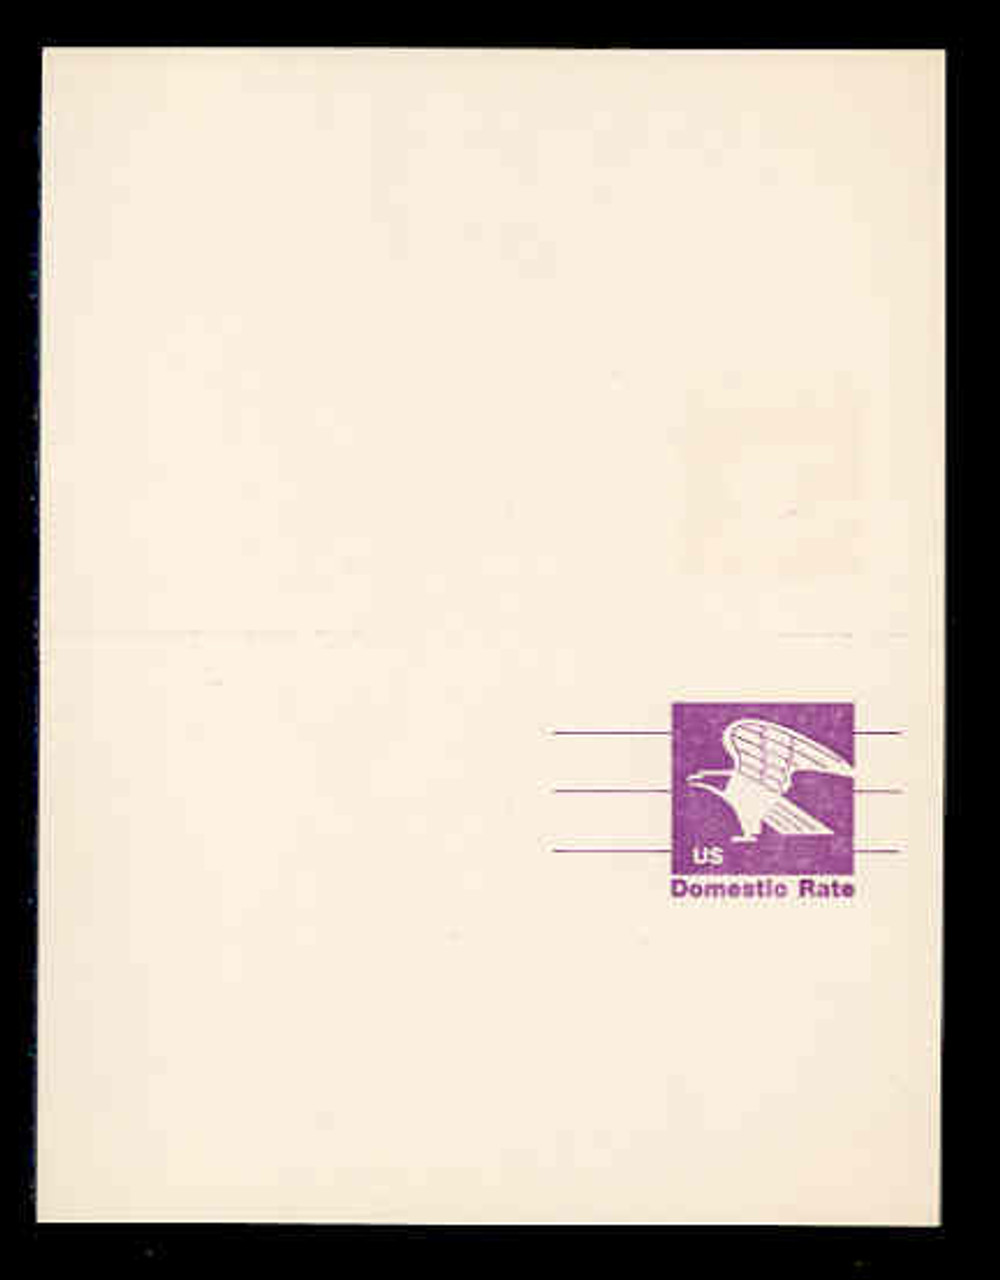 USA Scott # UY 31FM, 1981 (12c) Eagle - Domestic Rate (Non-Denominated) - Mint Message-Reply Card, FLUORESCENT (Medium Bright) PAPER - UNFOLDED